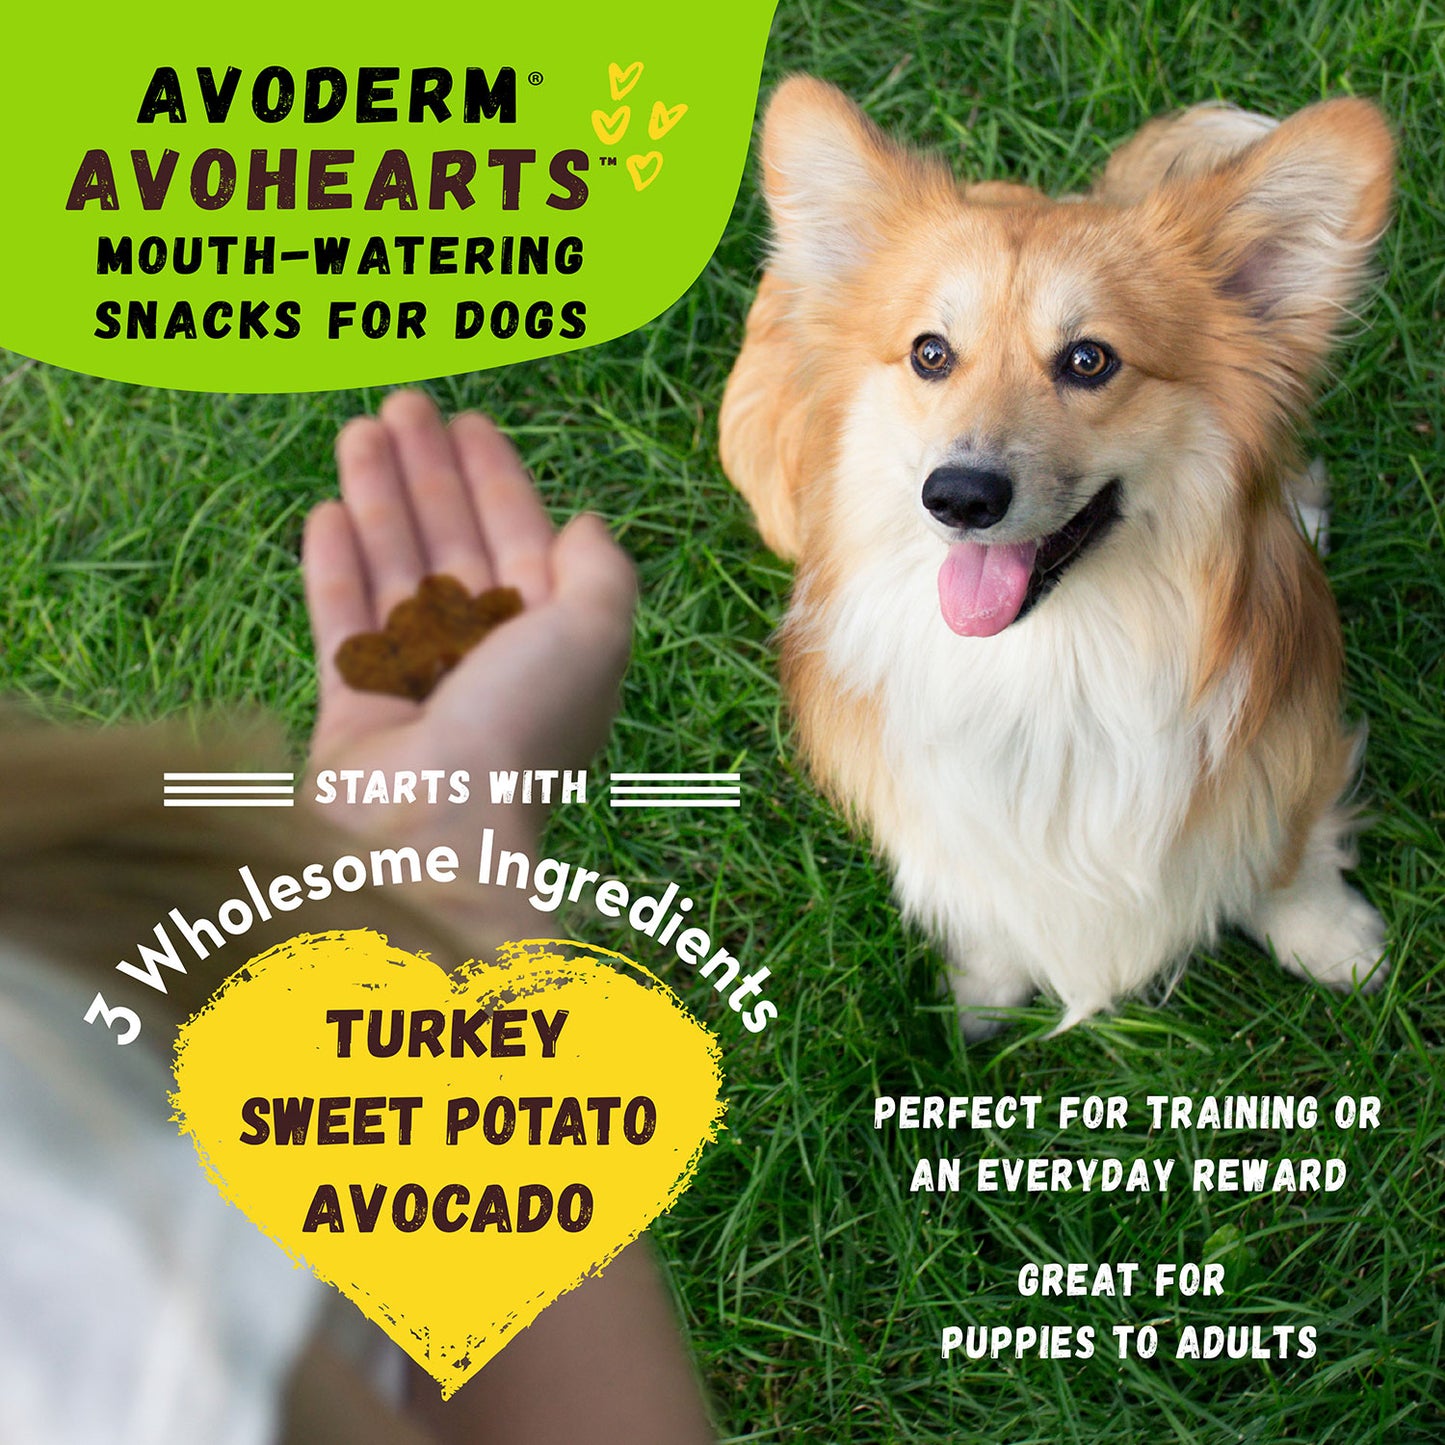 Avoderm® Avohearts™ Turkey & Avocado Formula 5-oz, Dog Treat